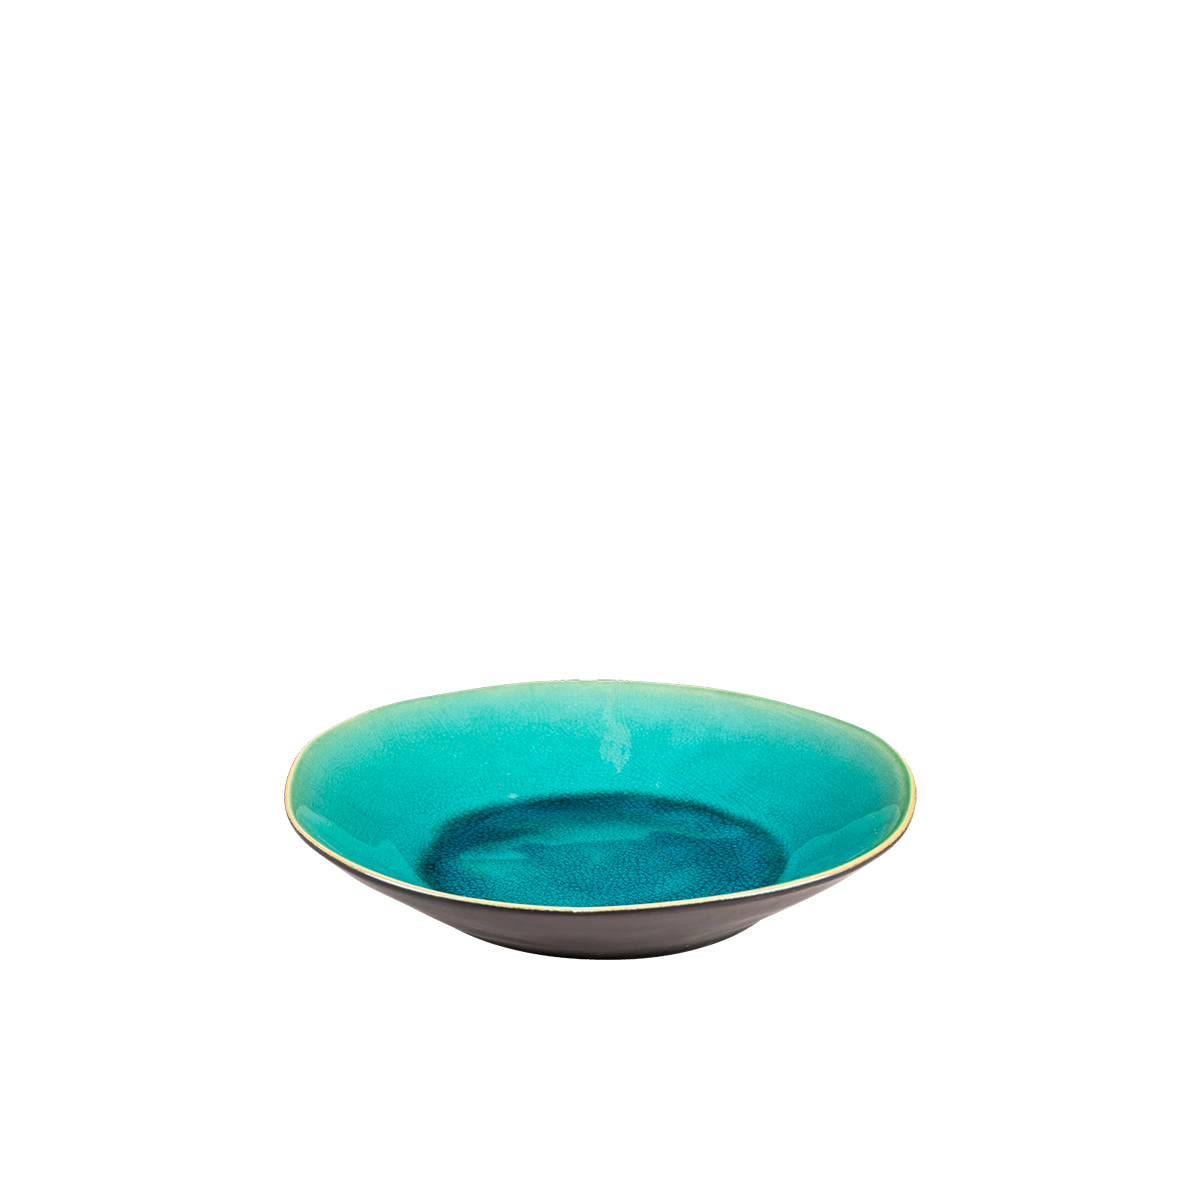 Lagon bowl Ø 25.5 cm H 4.6 cm Hire | Options Greathire London